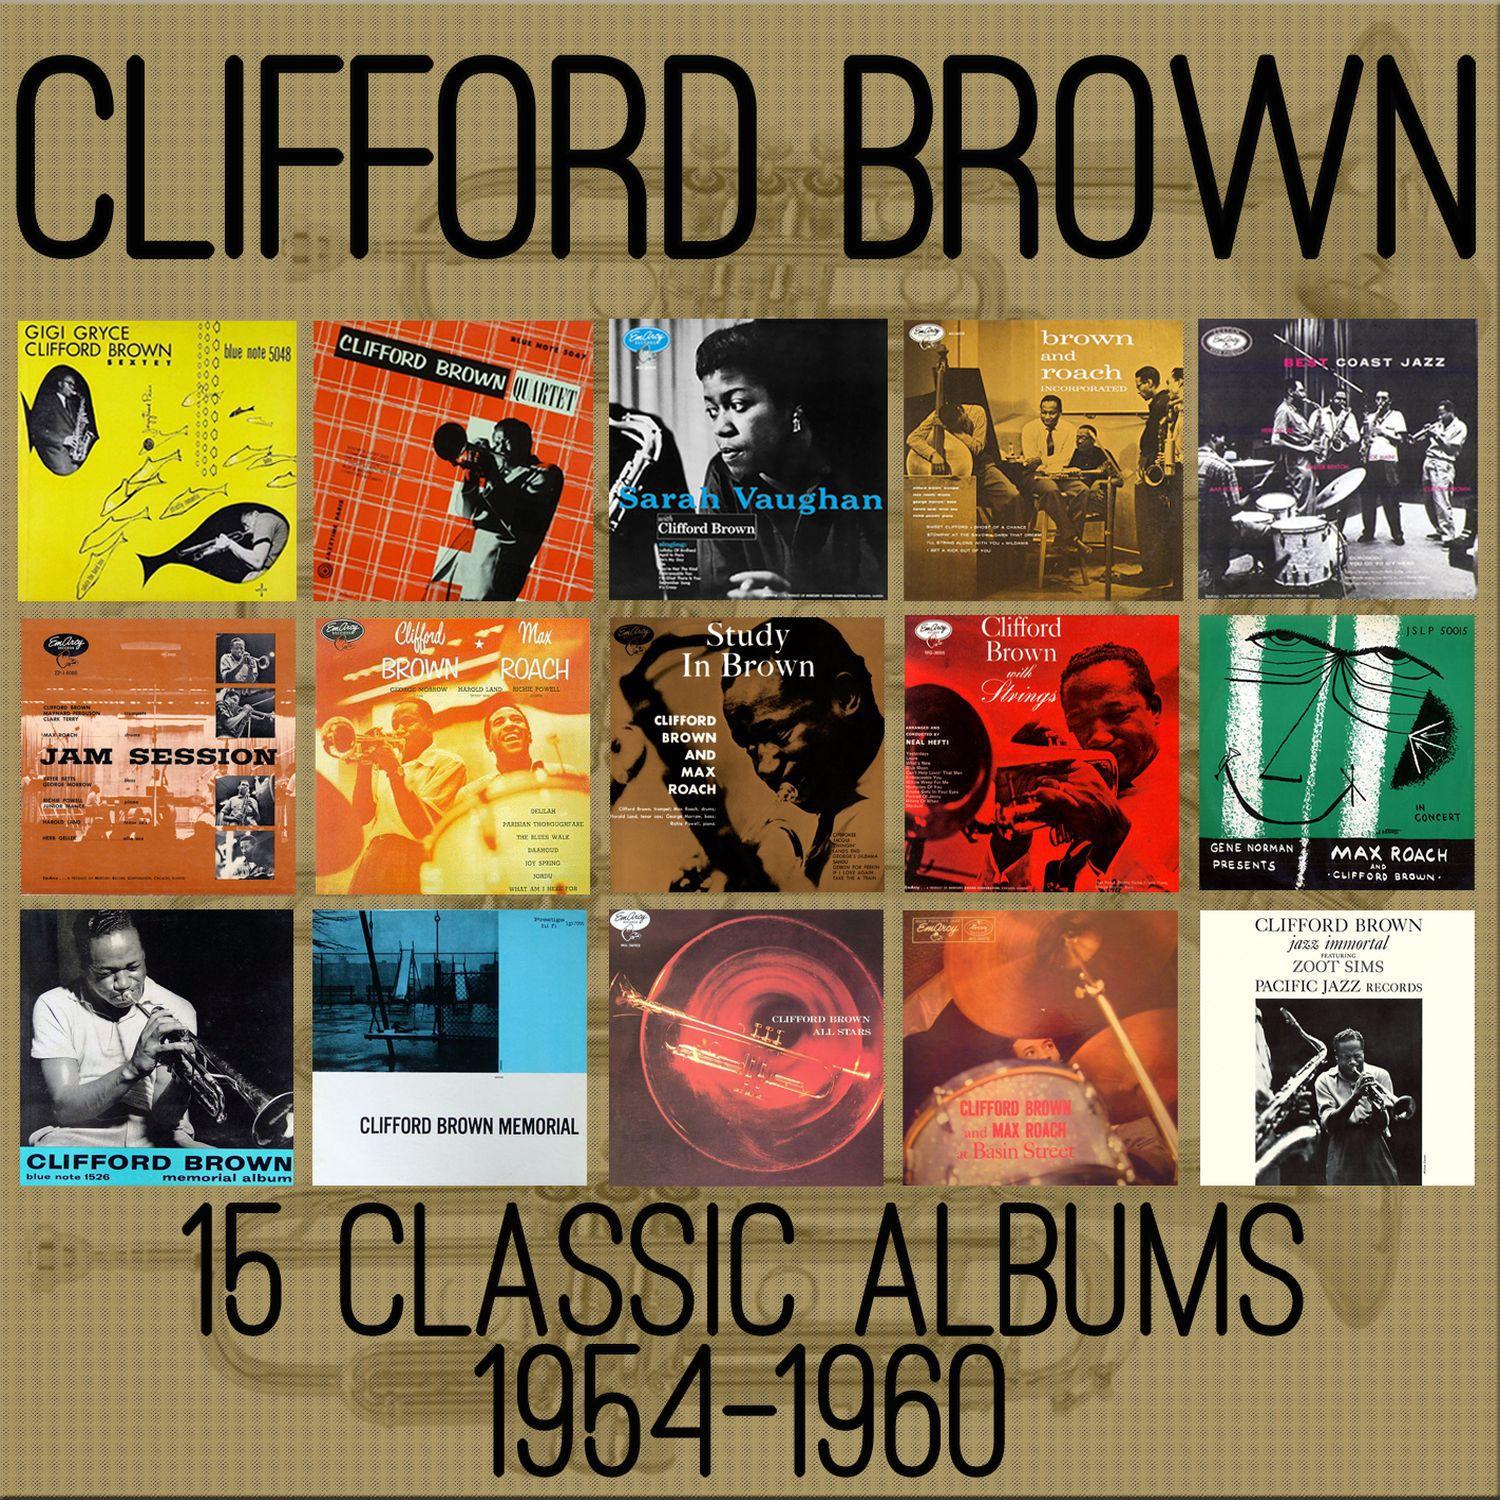 15 Classic Albums 1954-1960